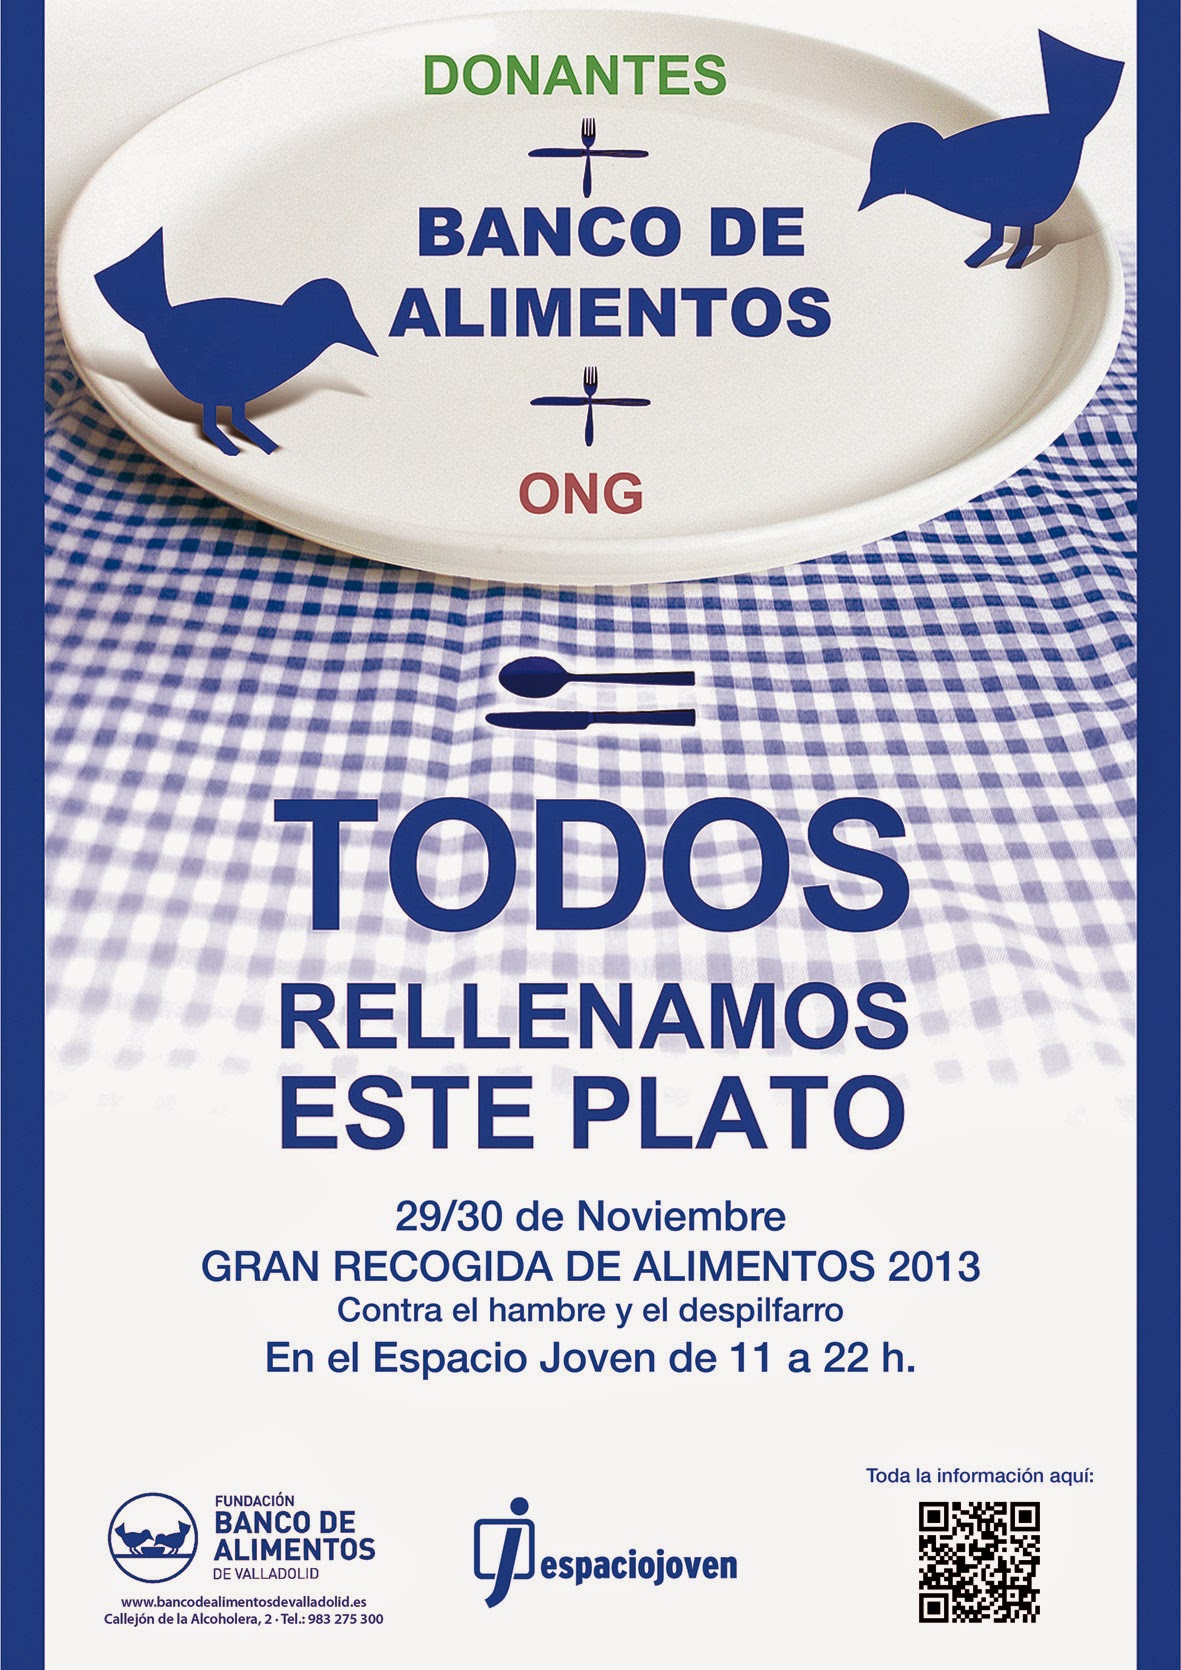 Participa en la Gran Recogida de Alimentos en Valladolid los días 29 y 30 de noviembre.